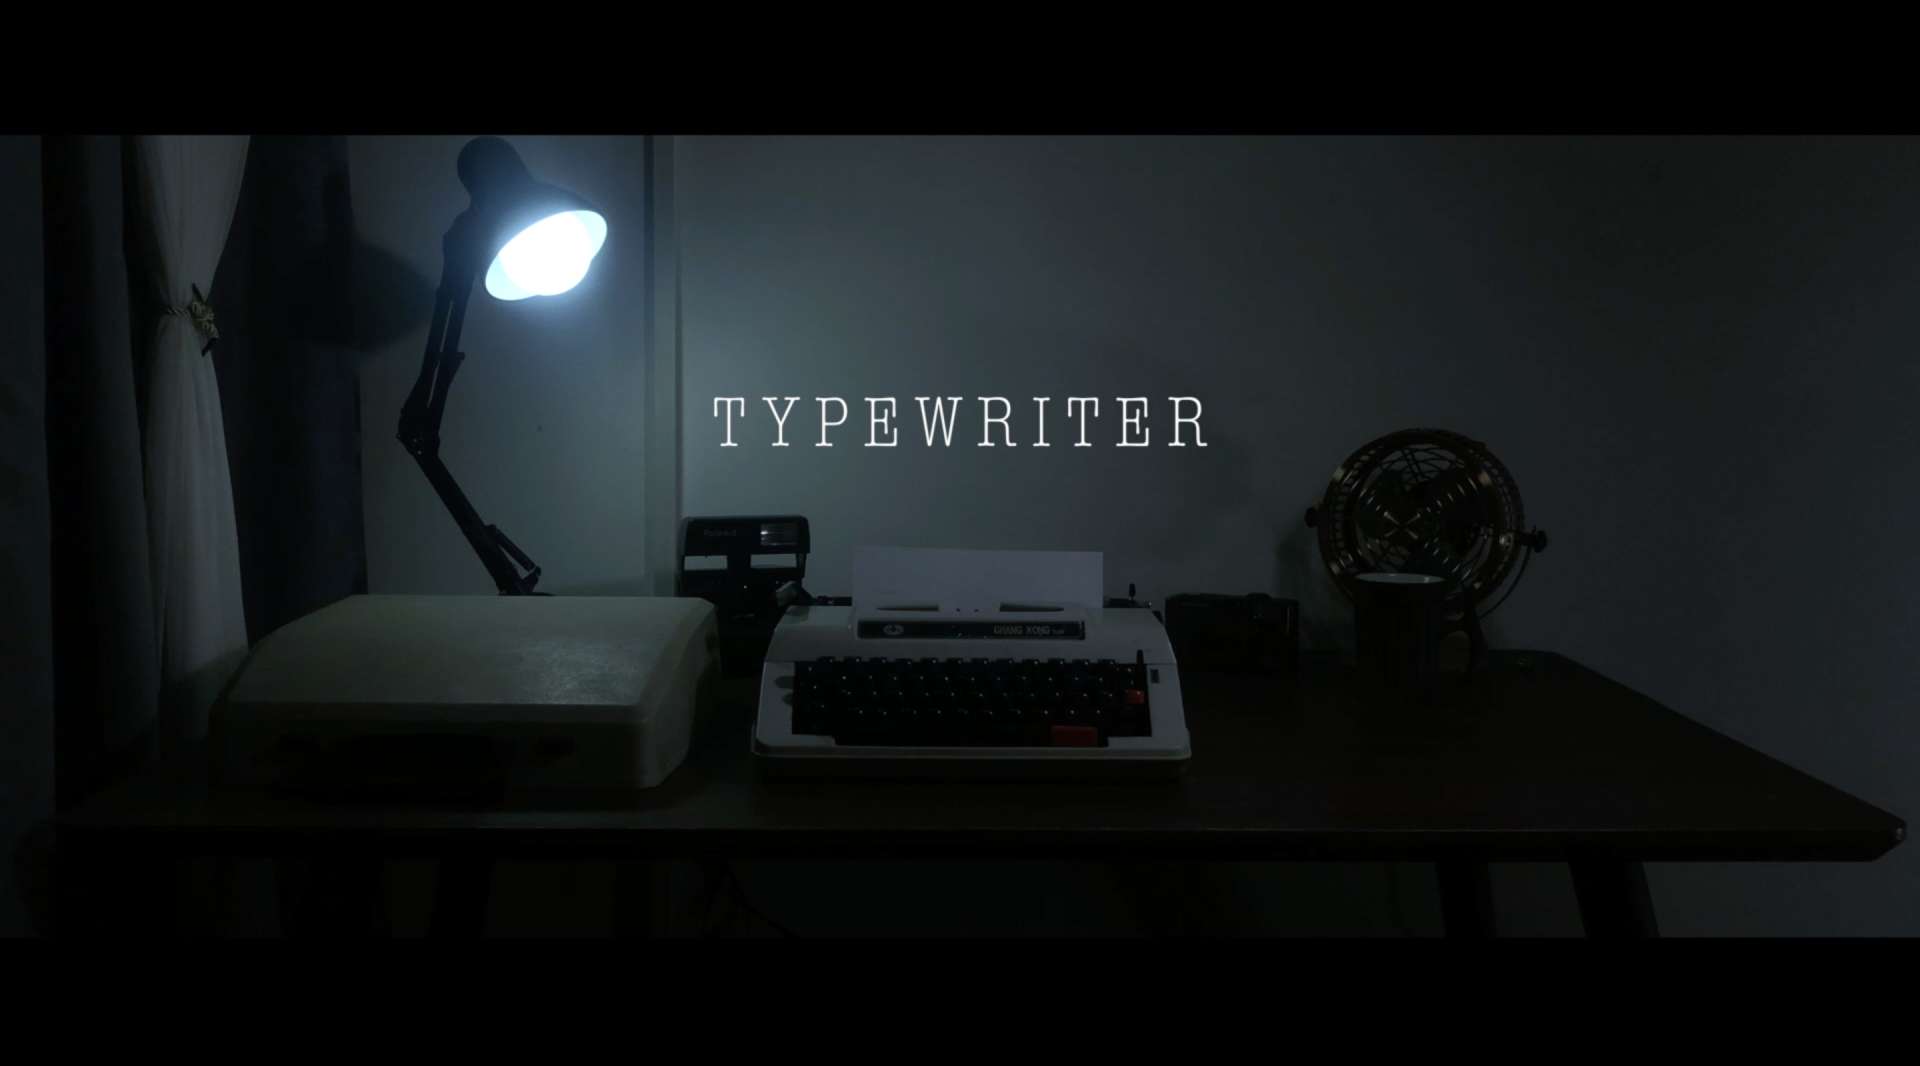 恐怖惊悚短片《打字机》